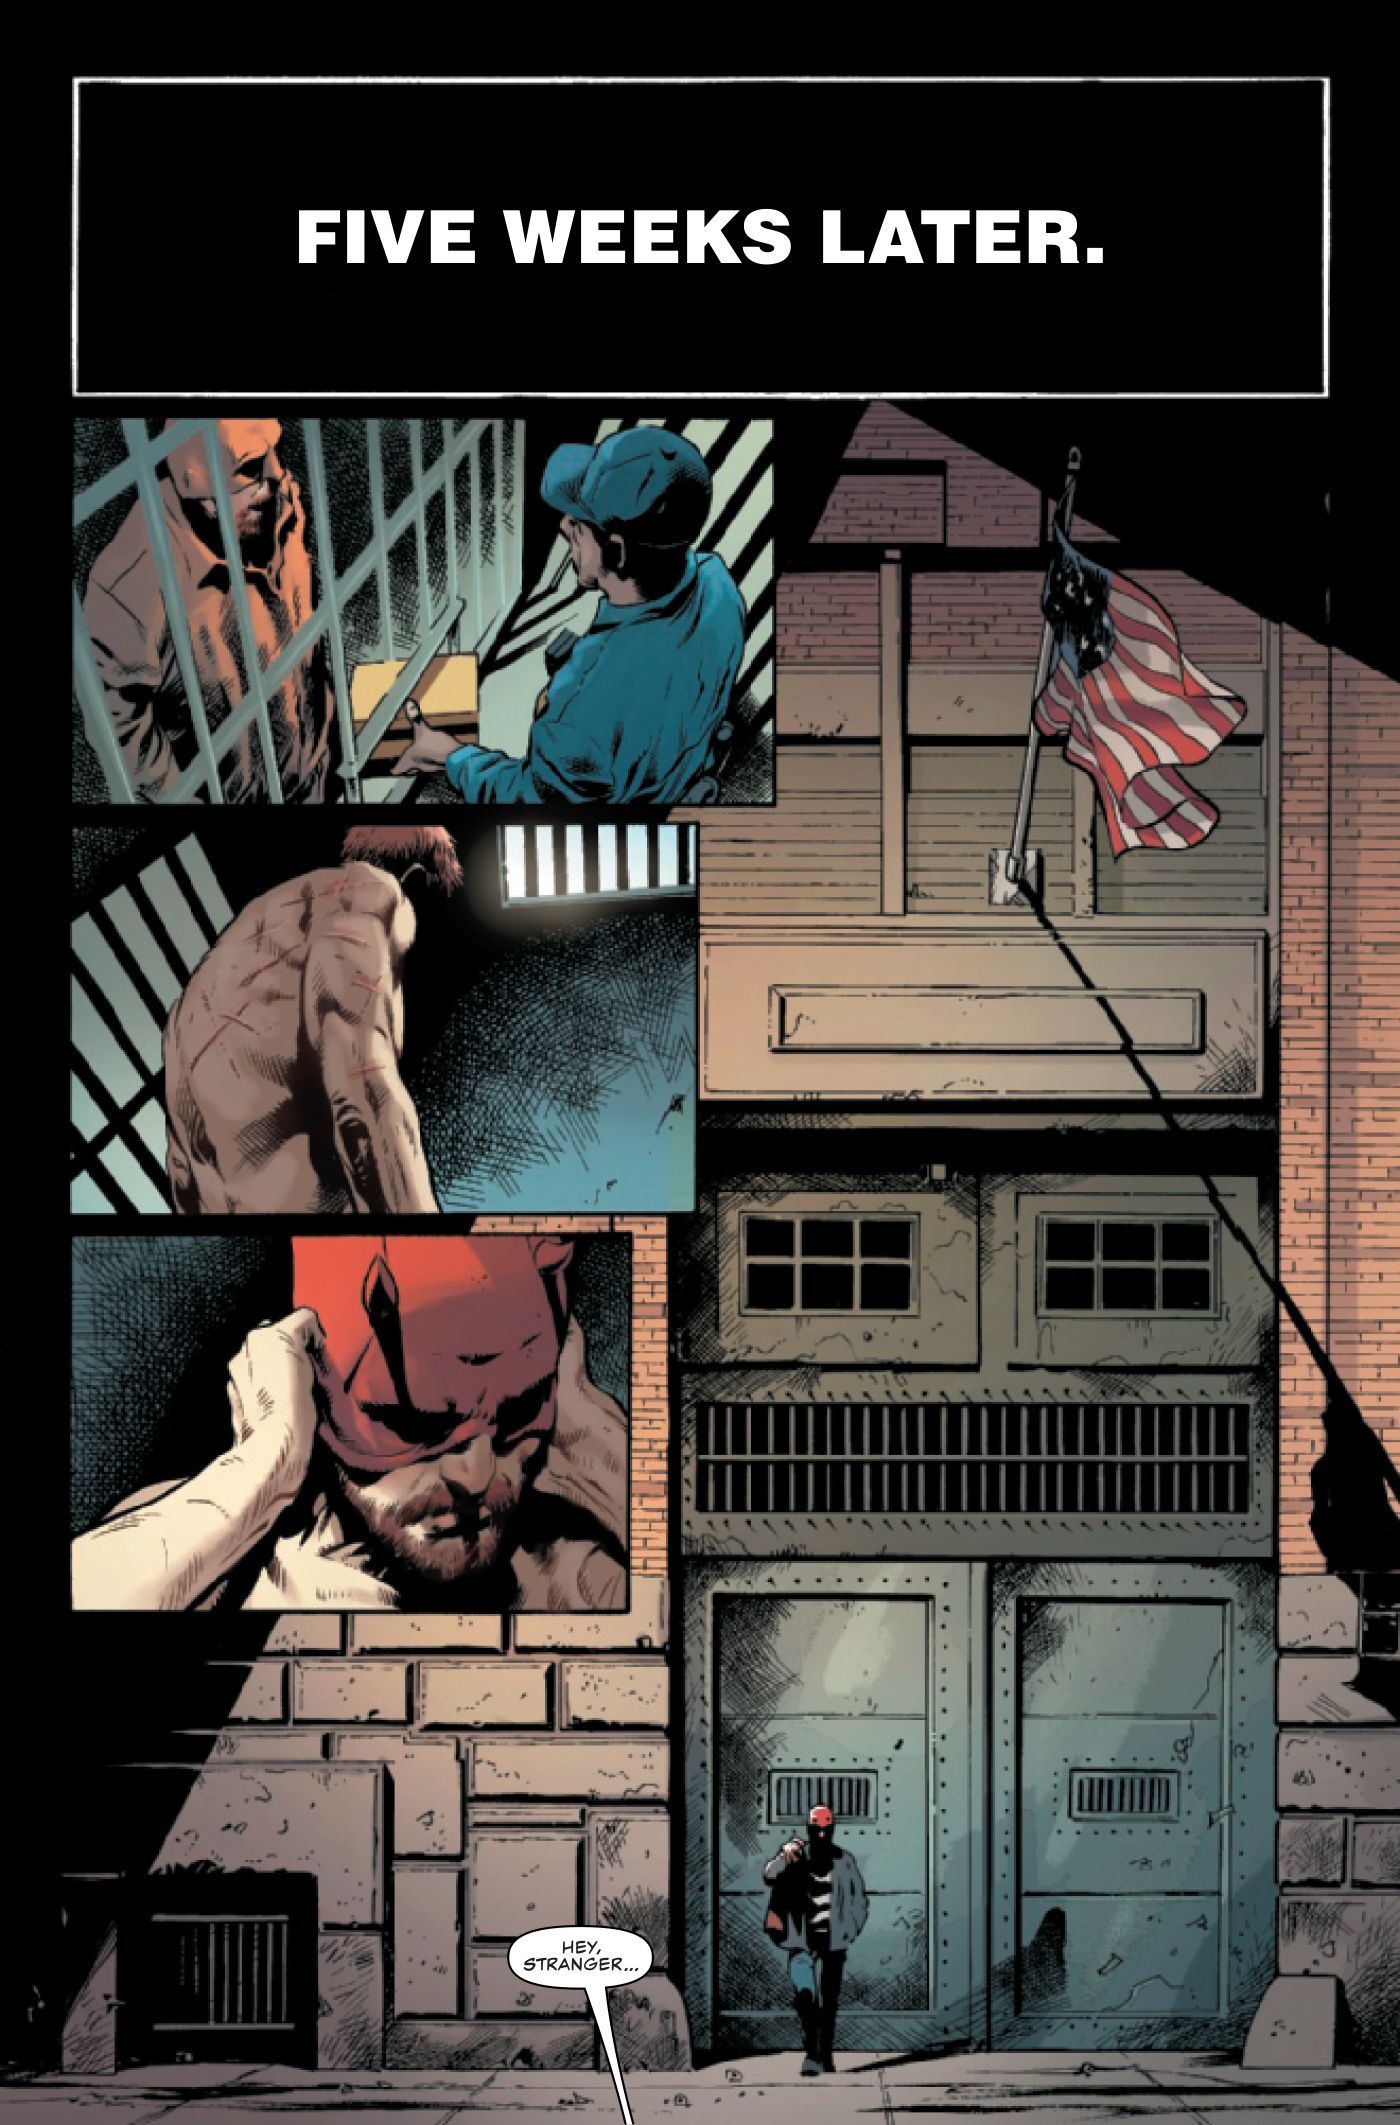 Daredevil (Matt Murdock) is released from prison.